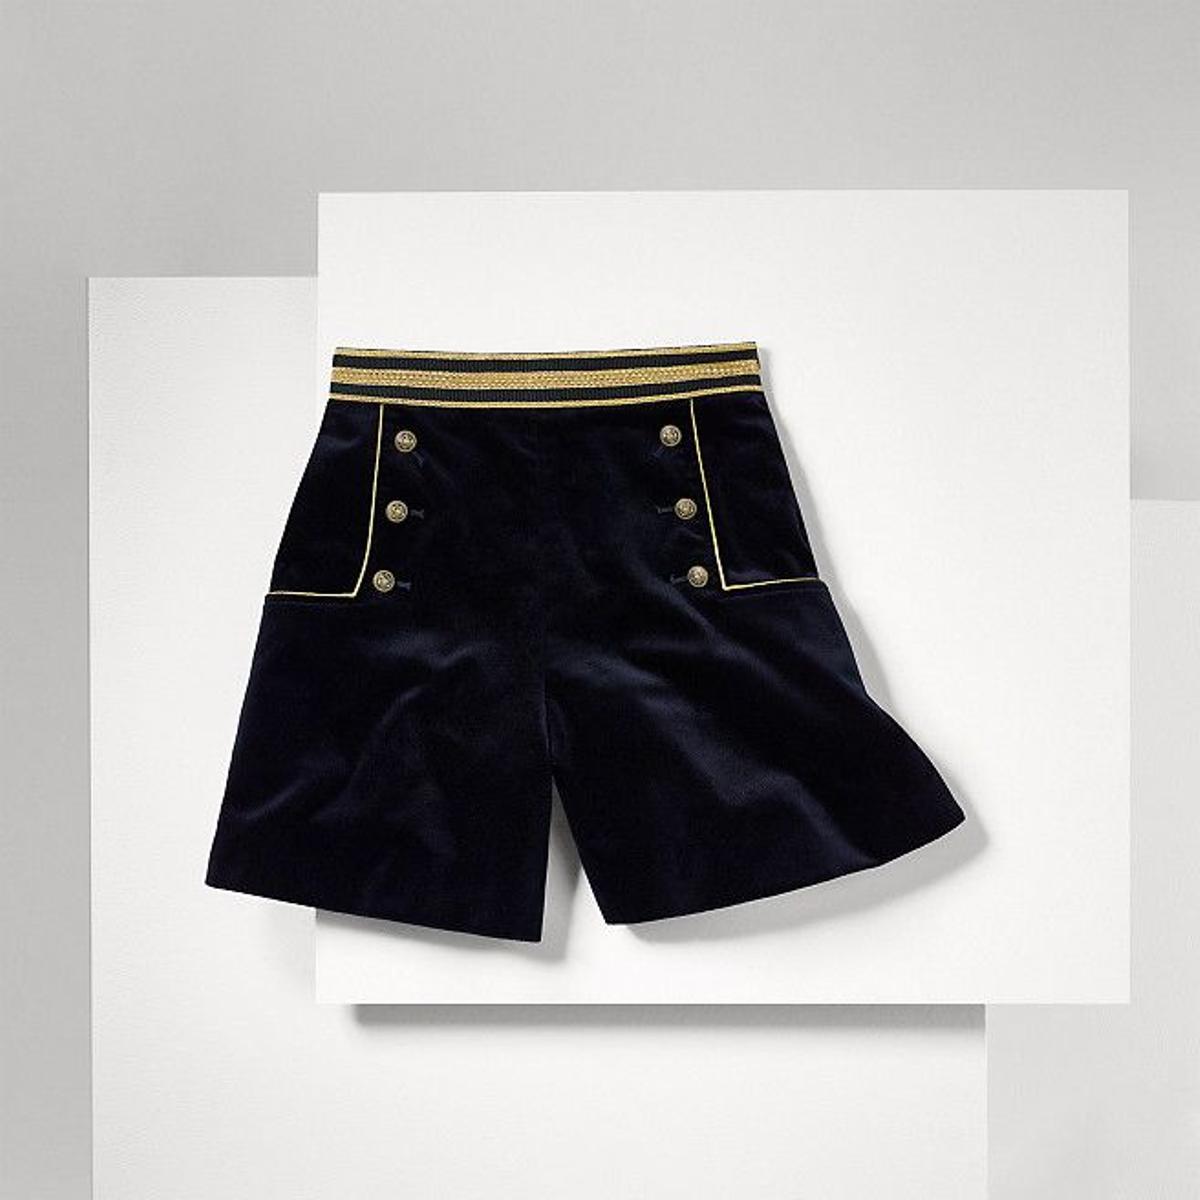 Shorts de terciopelo de Gigi Hadid para Tommy Hilfiger